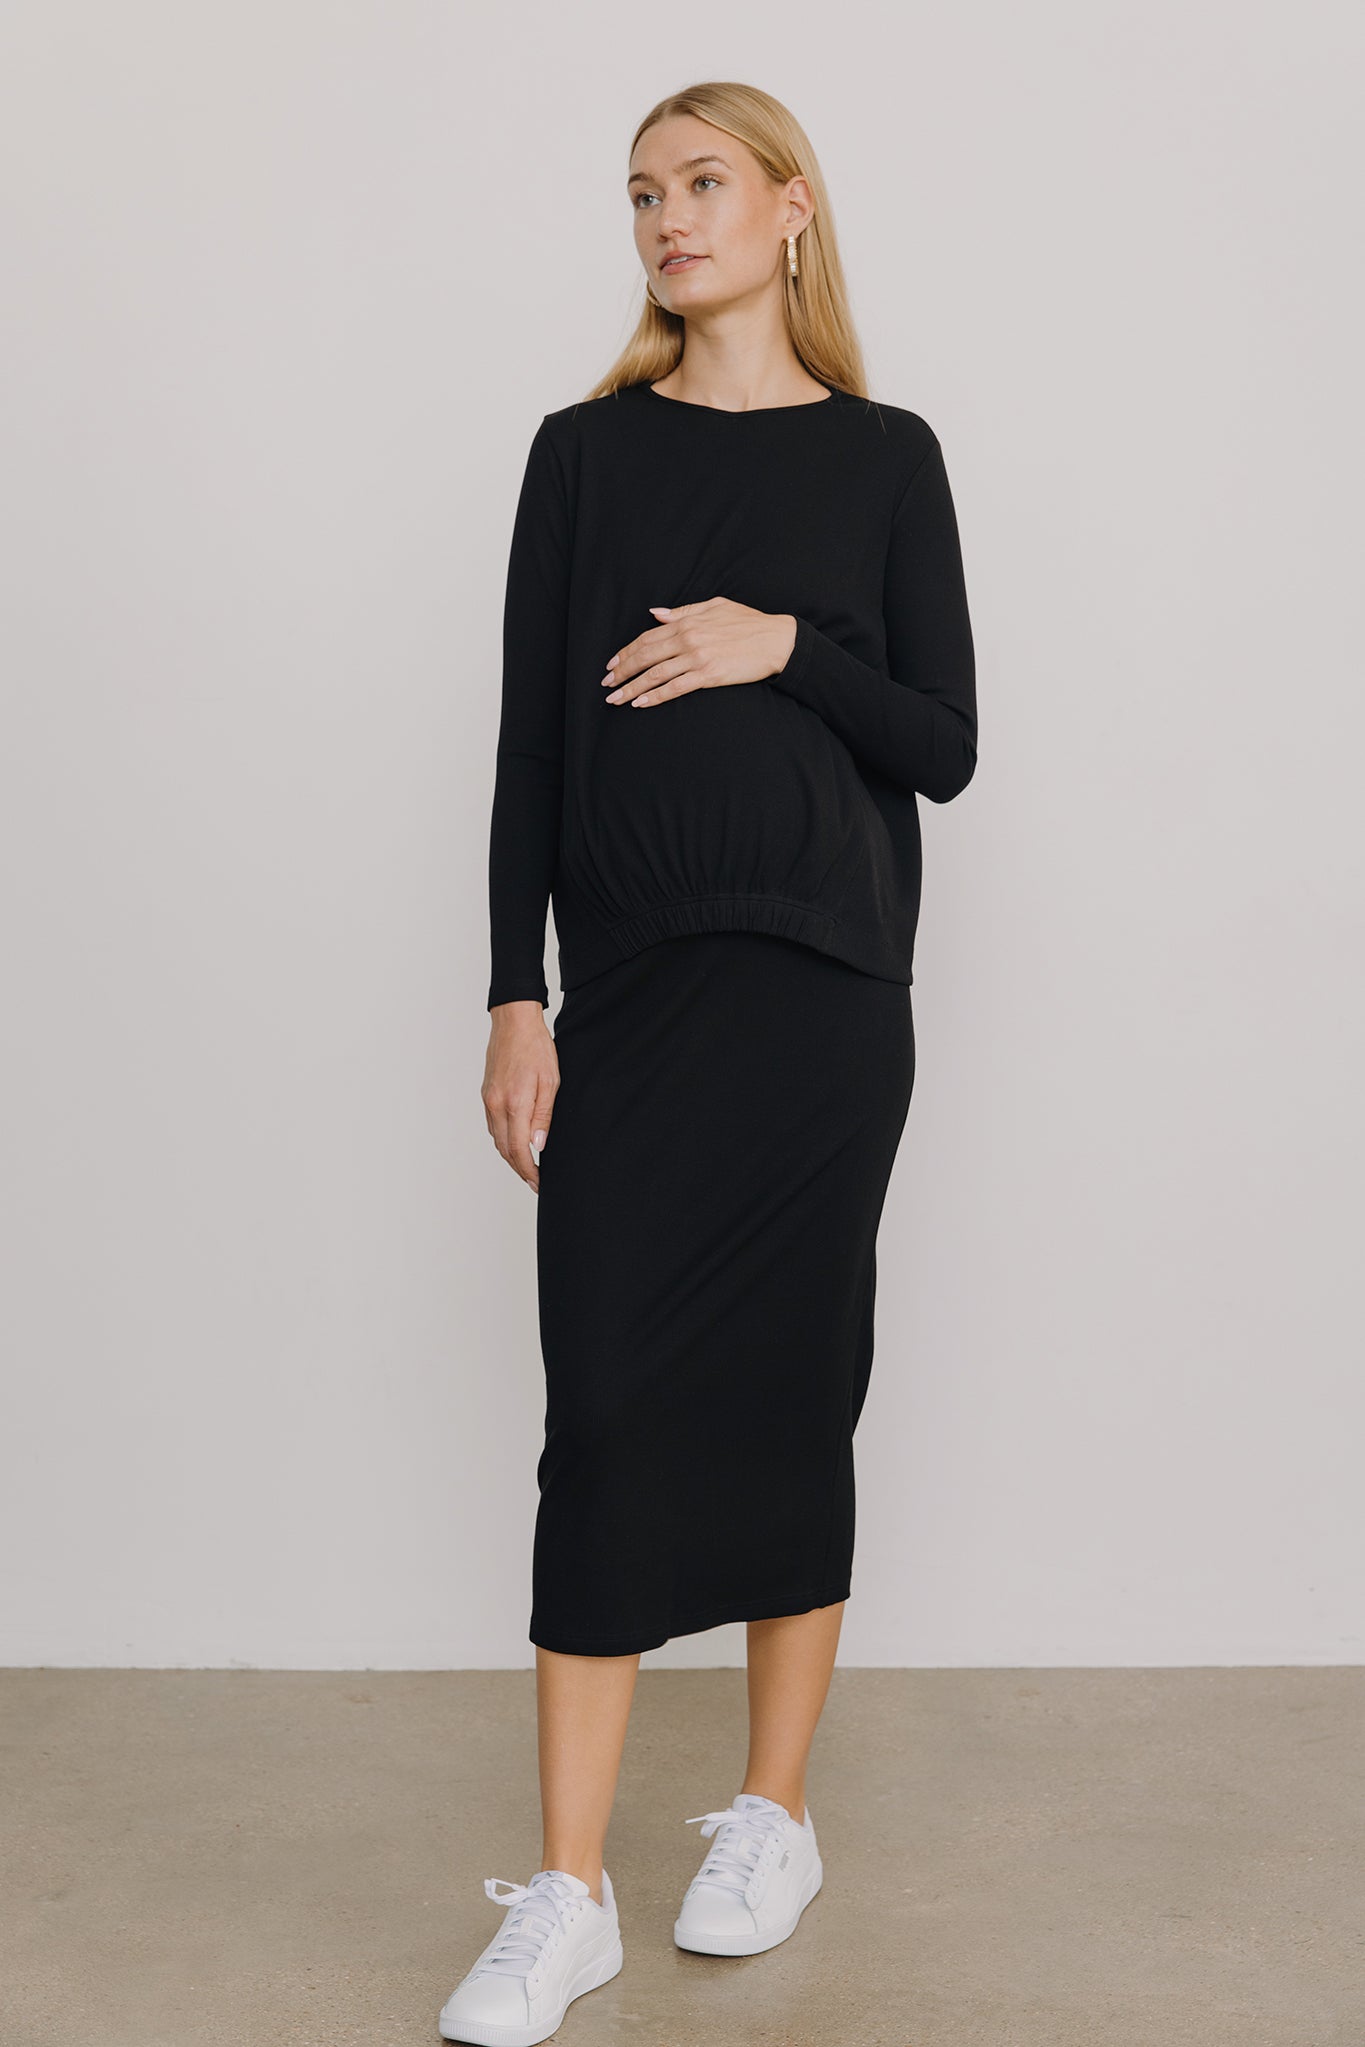 Sapphire Maternity Skirt in Black